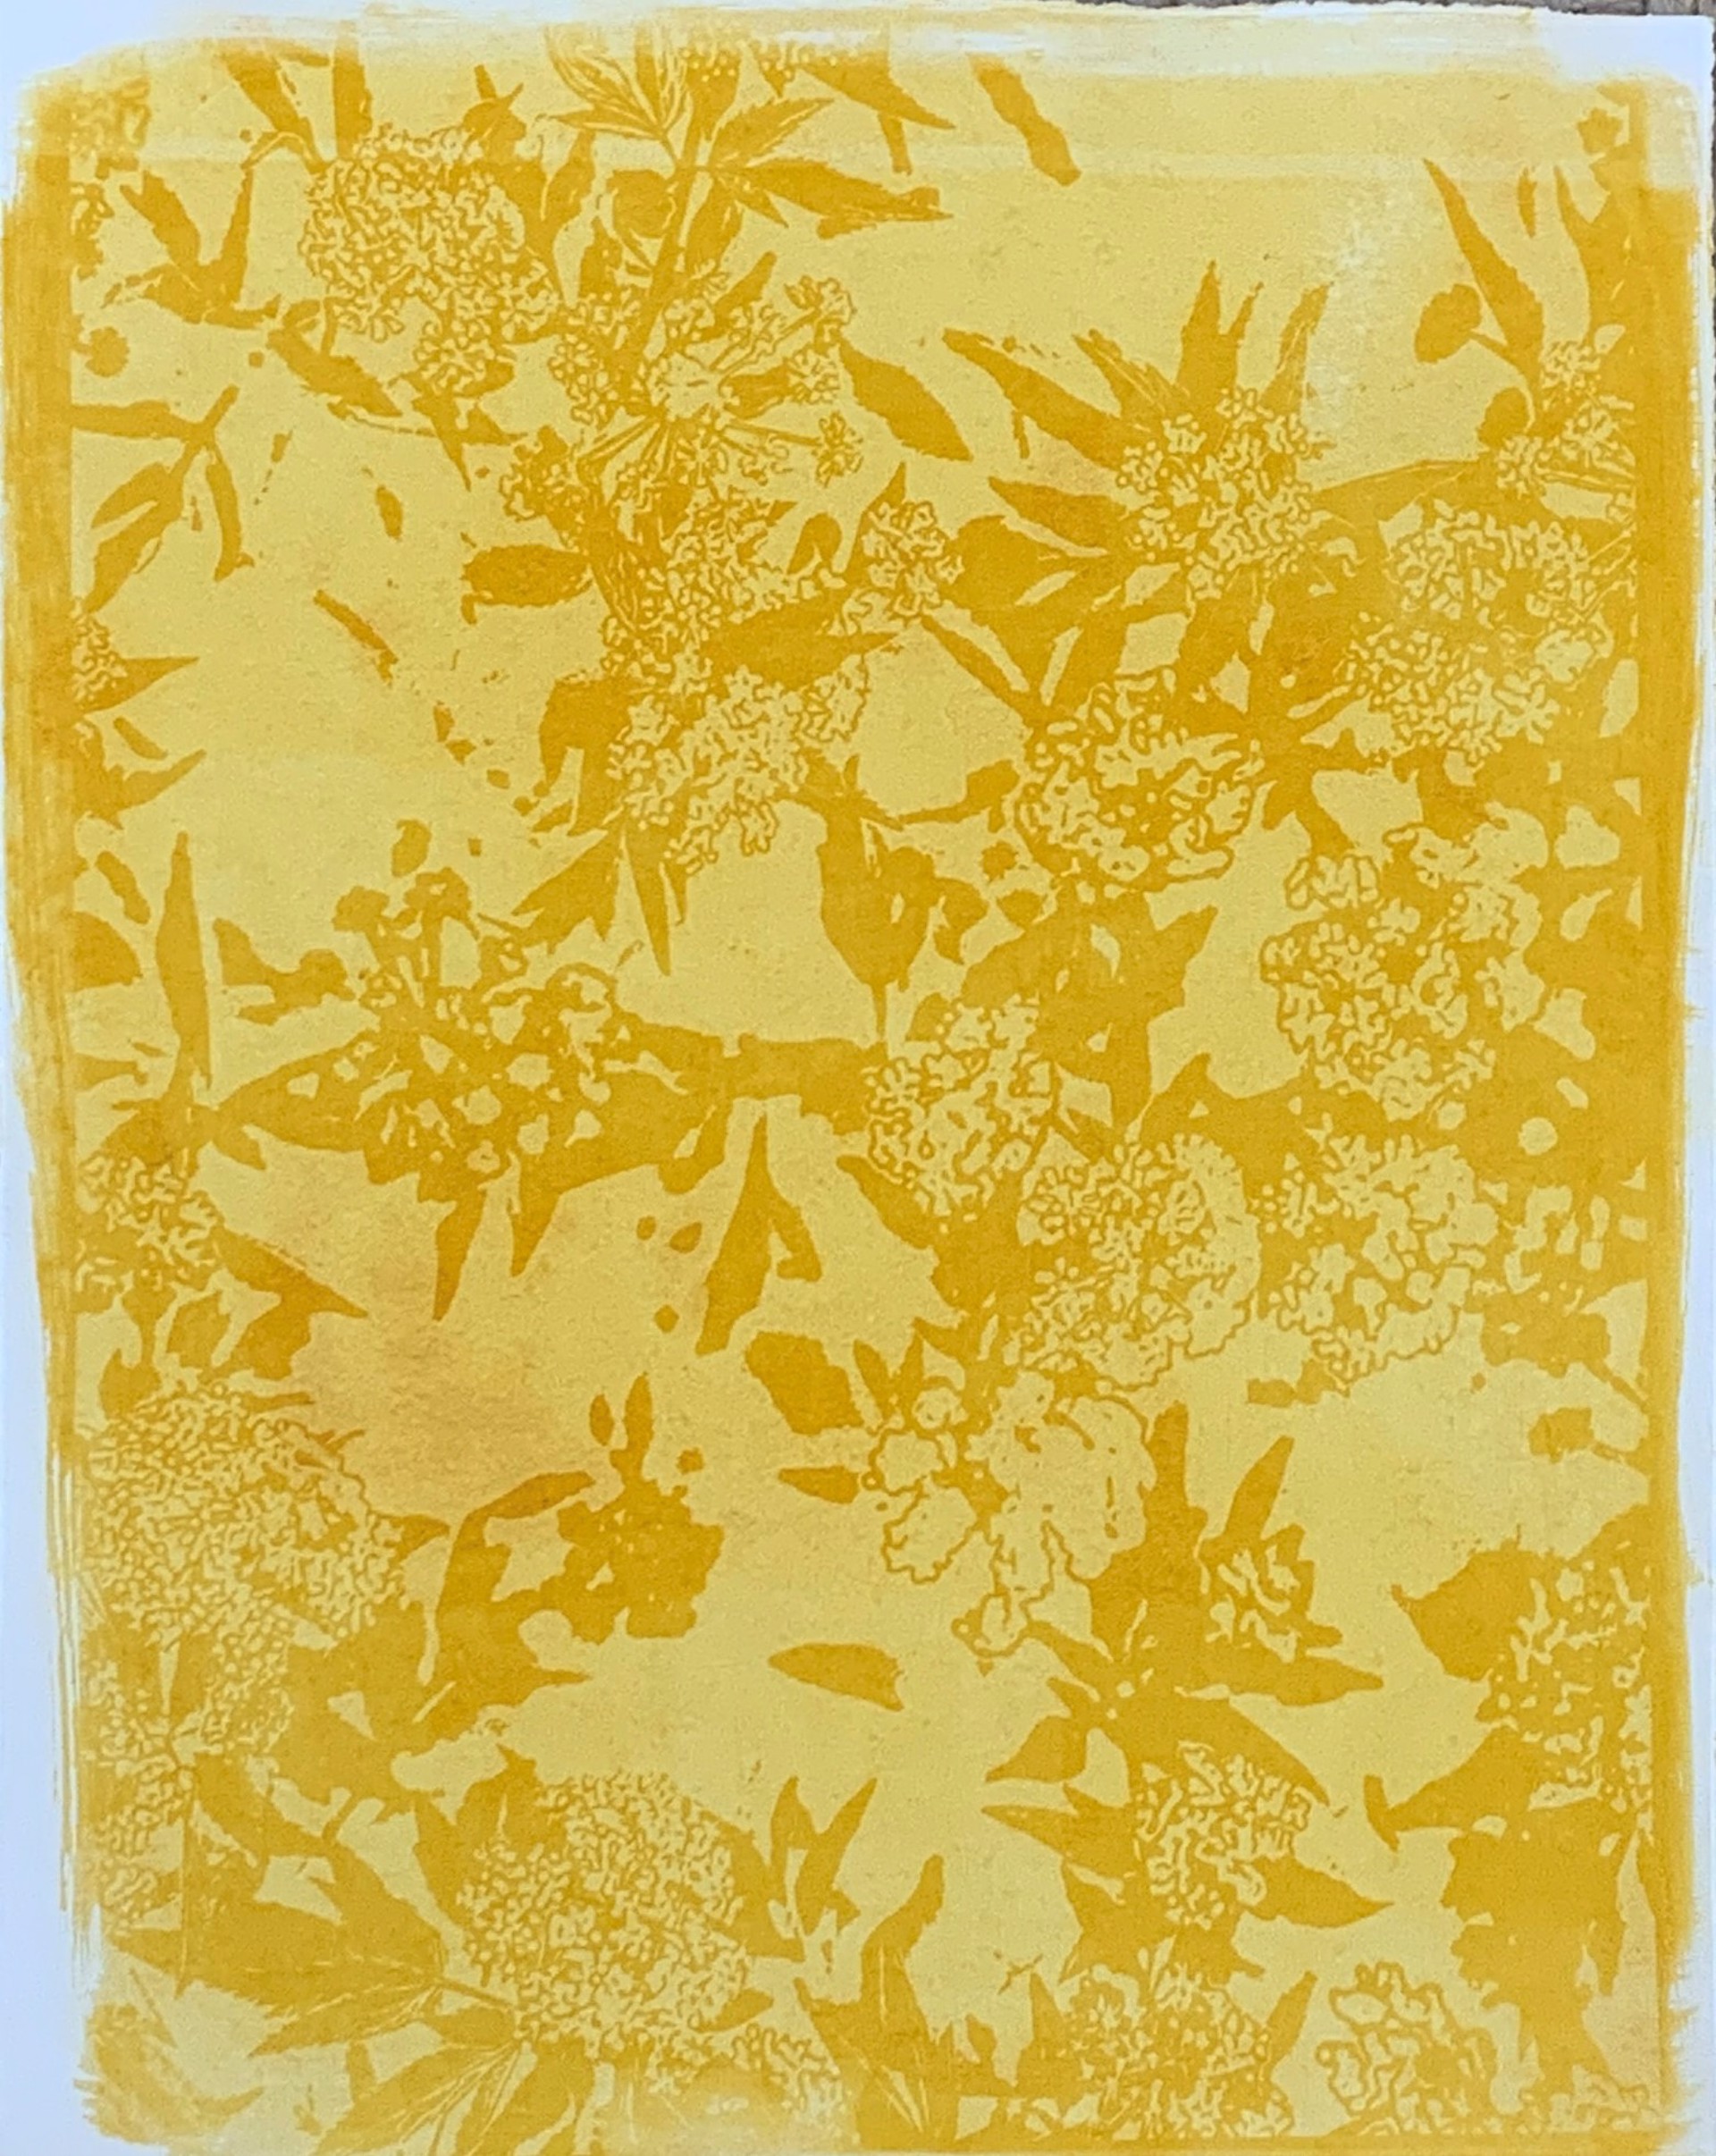 Yellow Flowers by Renee Stramel